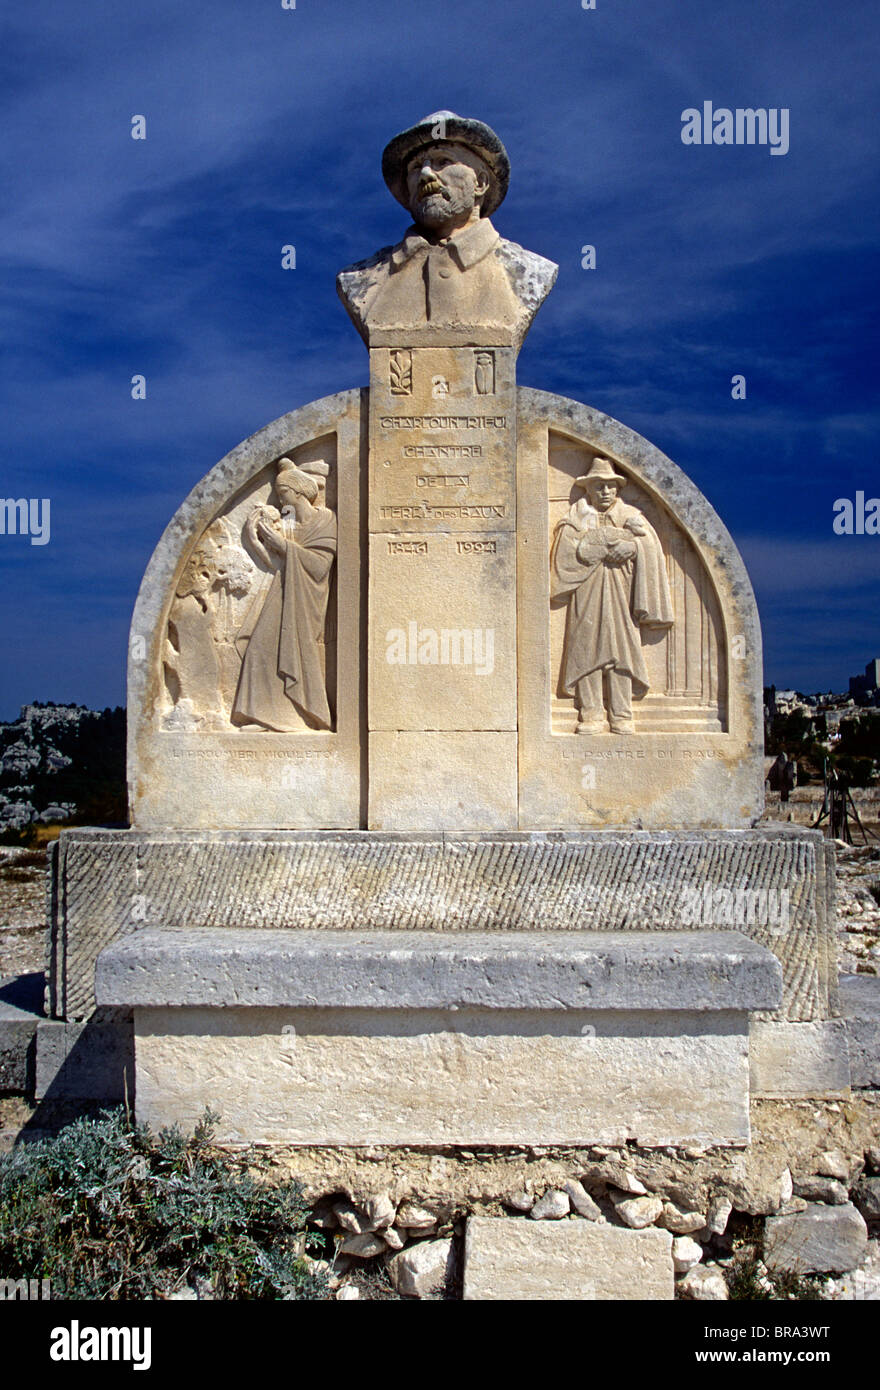 Statue of Charloun Rieu, Chateau des Baux, village of, Les Baux-de-Provence, Provence, France, Europe Stock Photo